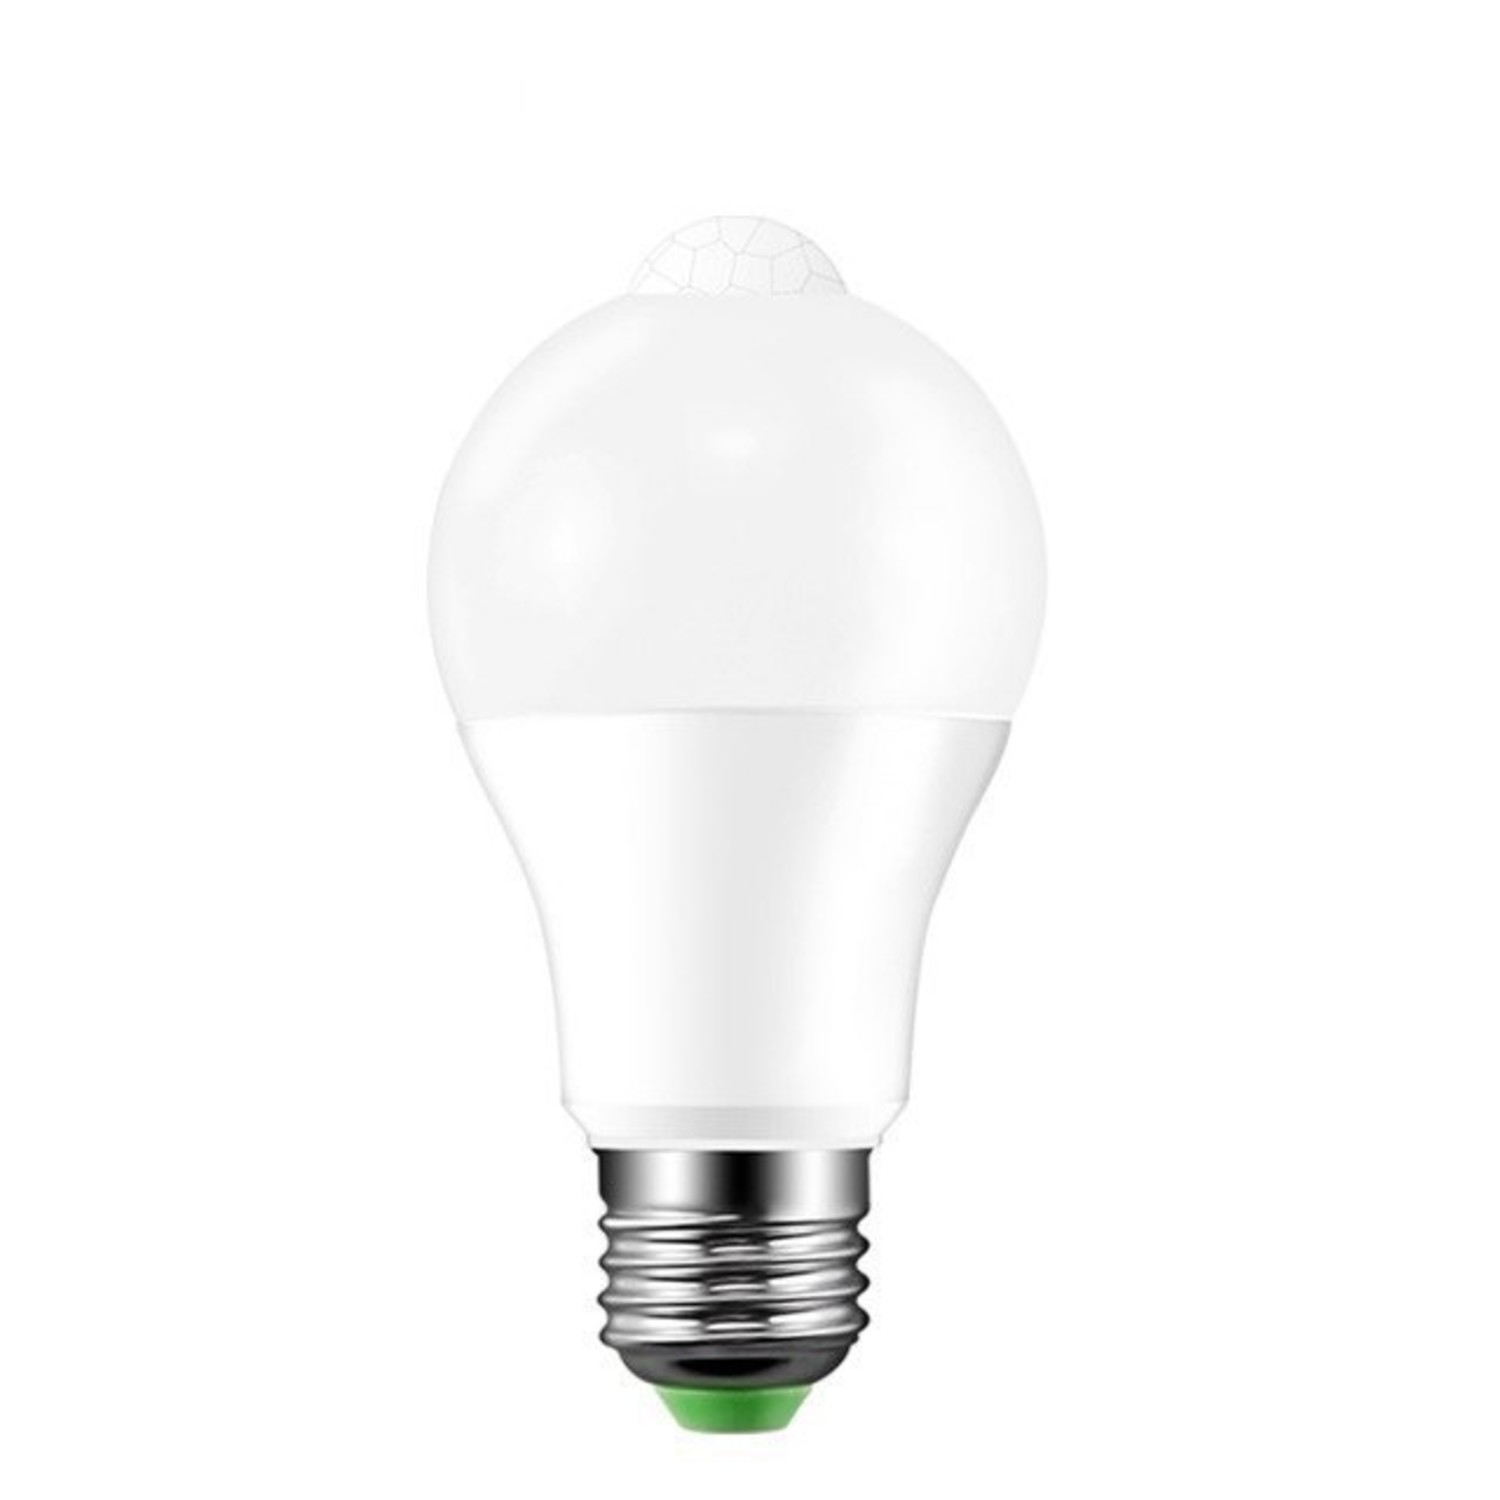 Verbeteren Mediaan Alfabet LED lamp met bewegingssensor - E27 fitting - 6W vervangt 41W -  Ledlichtdiscounter.nl